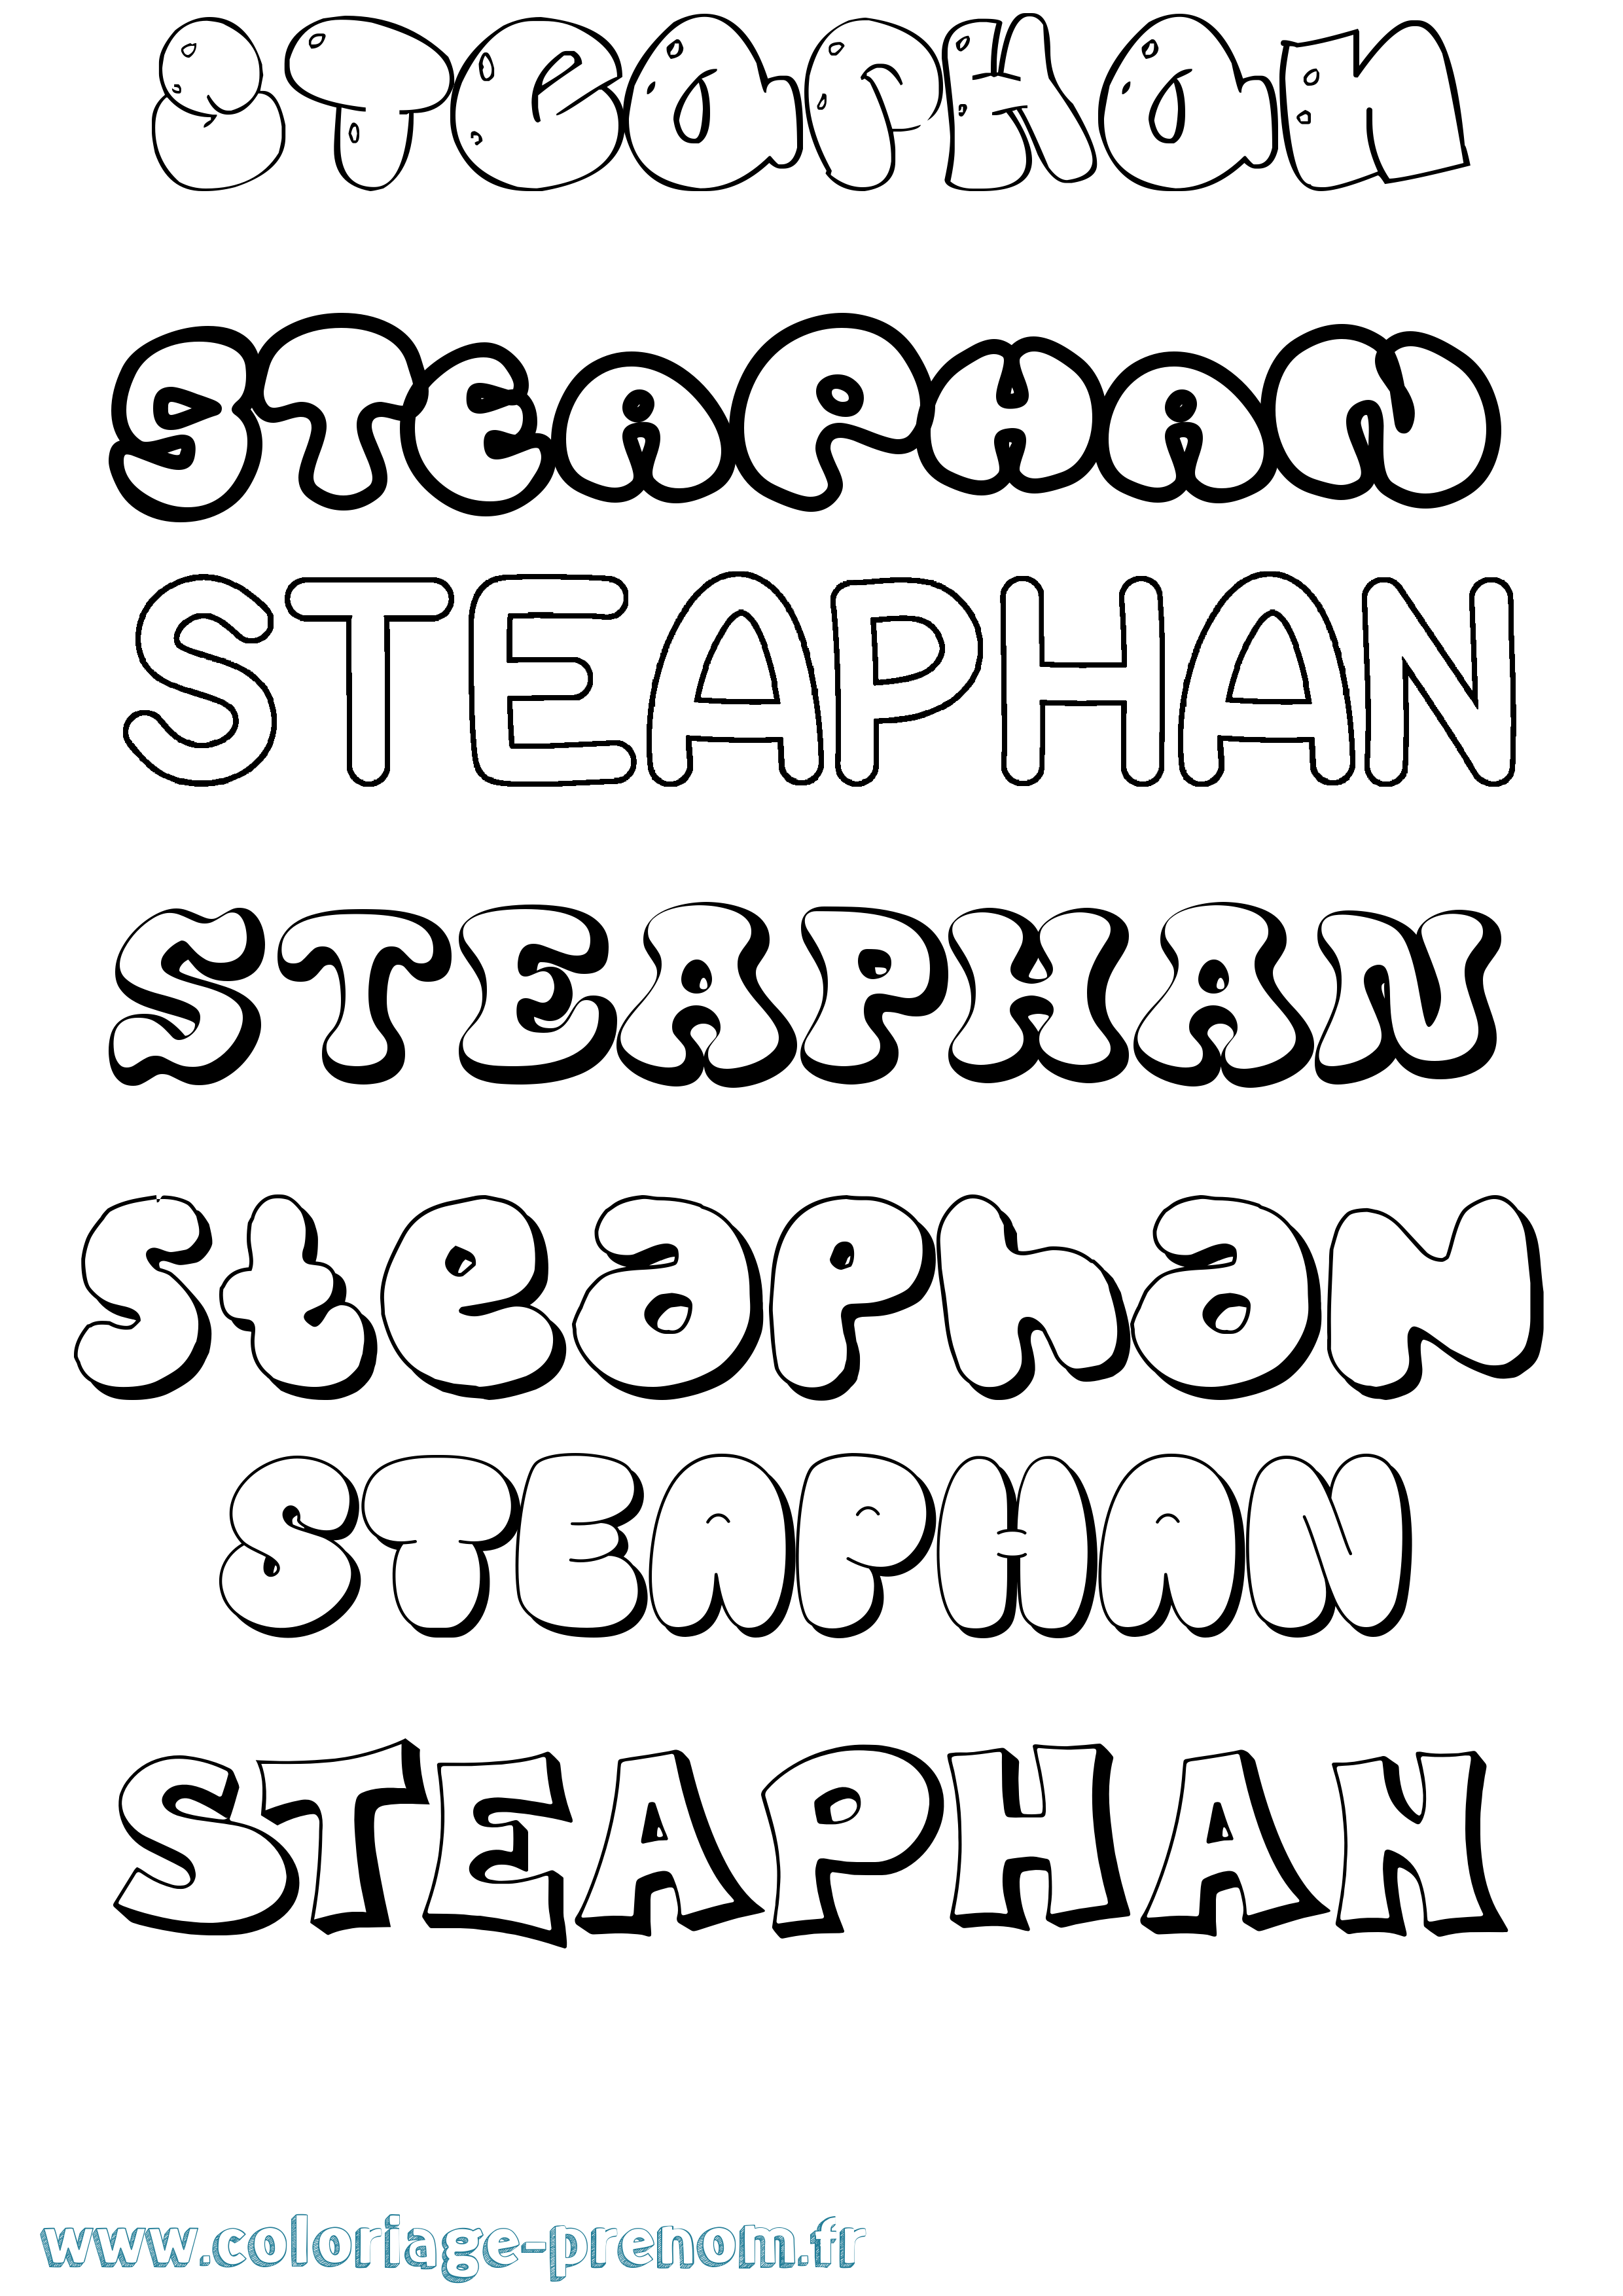 Coloriage prénom Steaphan Bubble